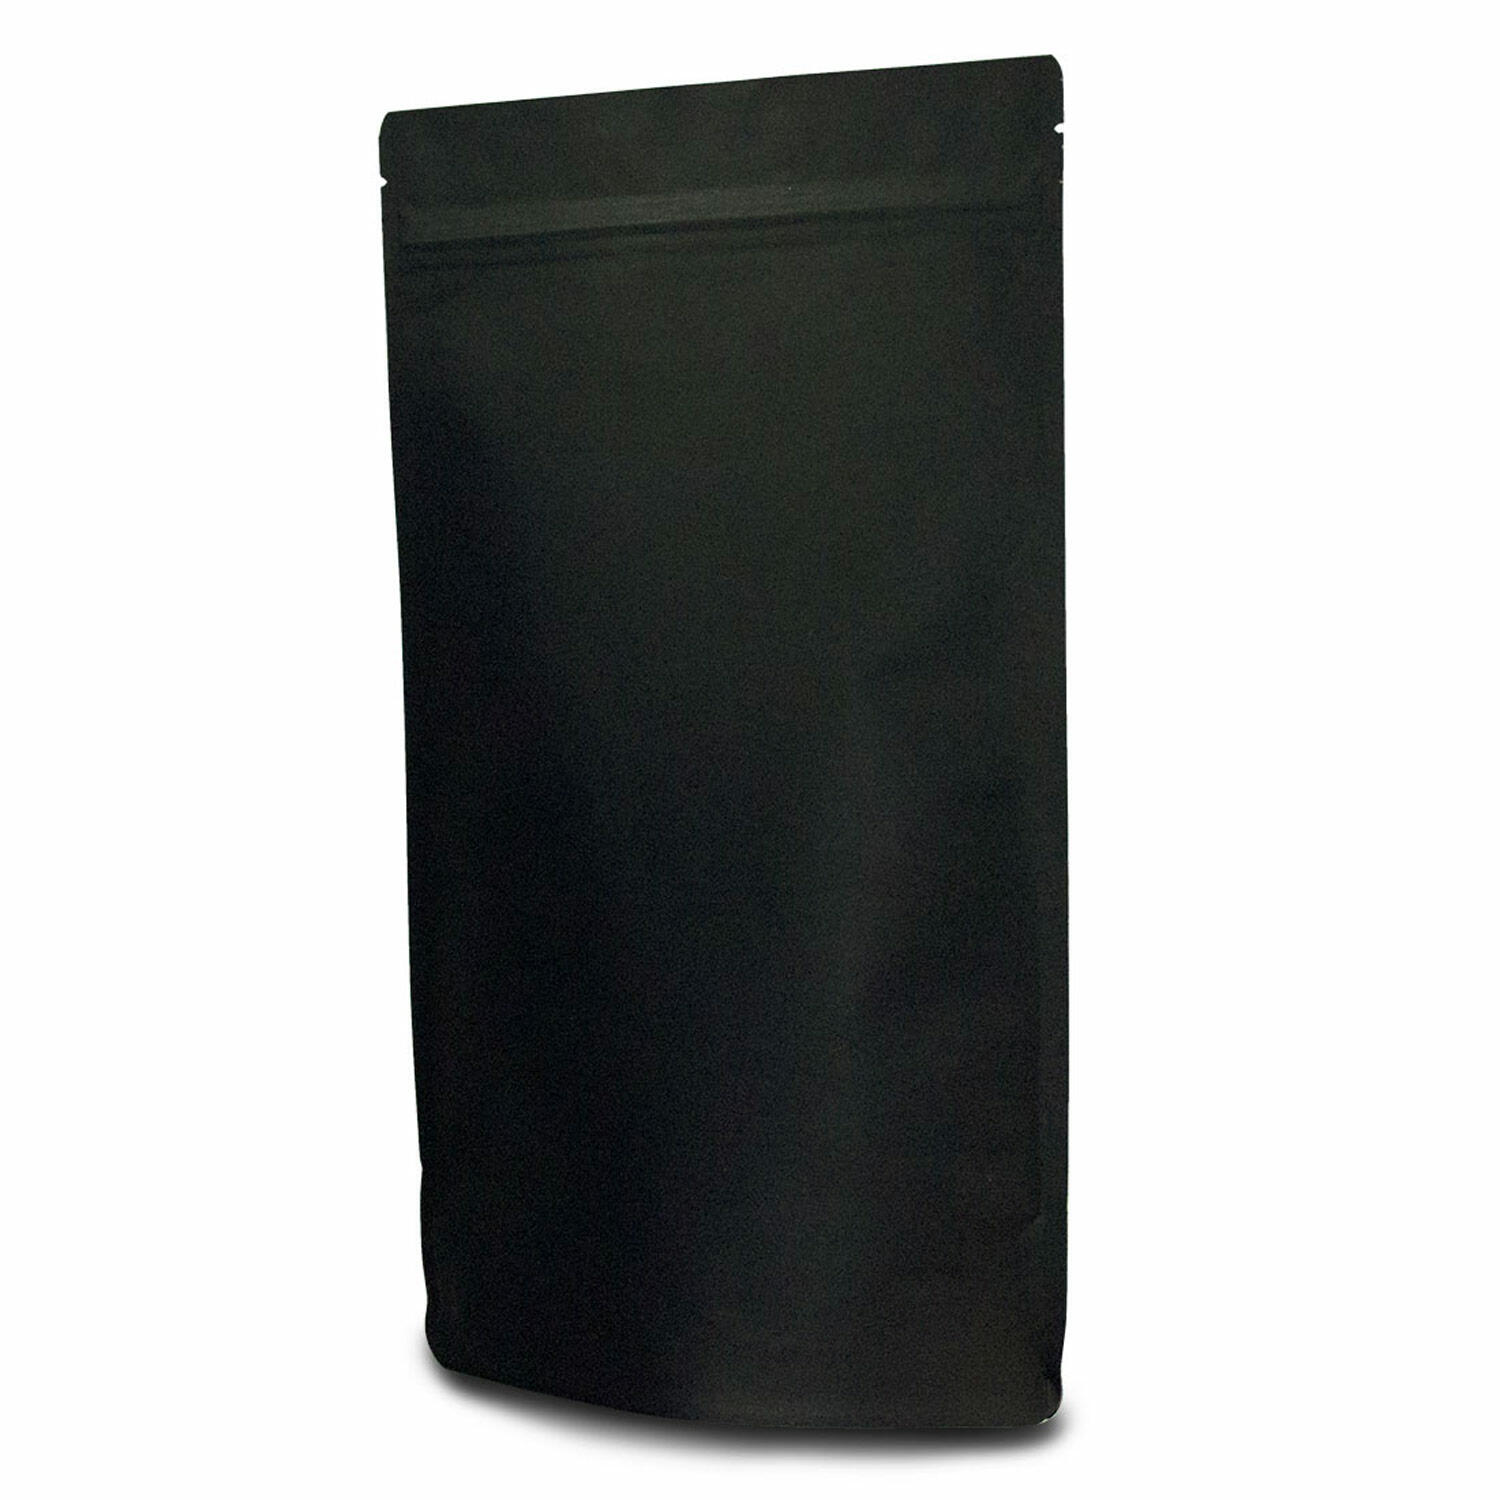 Standbodenbeutel Kraftpapier schwarz, 110x185x65mm,  250ml, 1000 Stk.